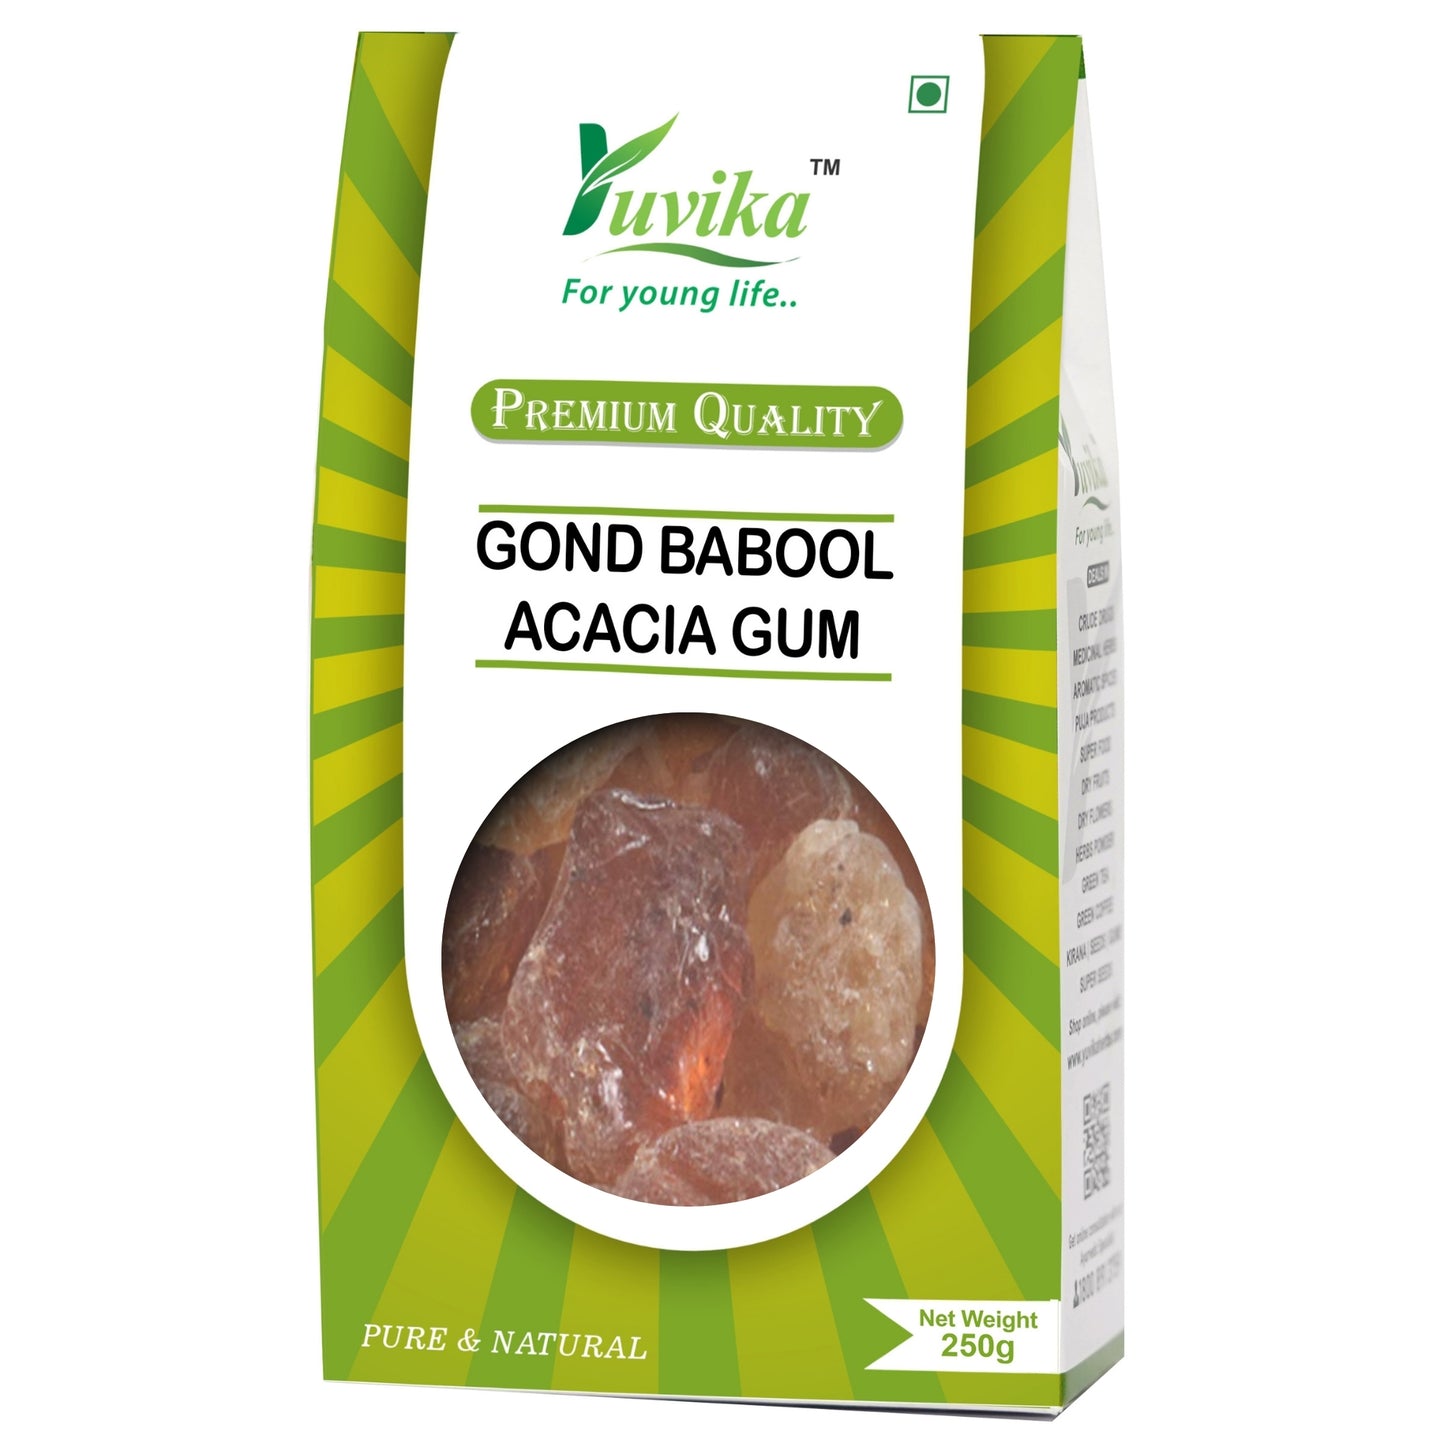 ਗੋਂਡ ਬਾਬੂਲ - ਬਾਬੁਲ ਗੋਂਡ - ਗੋਂਡ ਕਿੱਕਰ - ਬਬੂਲ ਗੰਮ (250 ਗ੍ਰਾਮ)